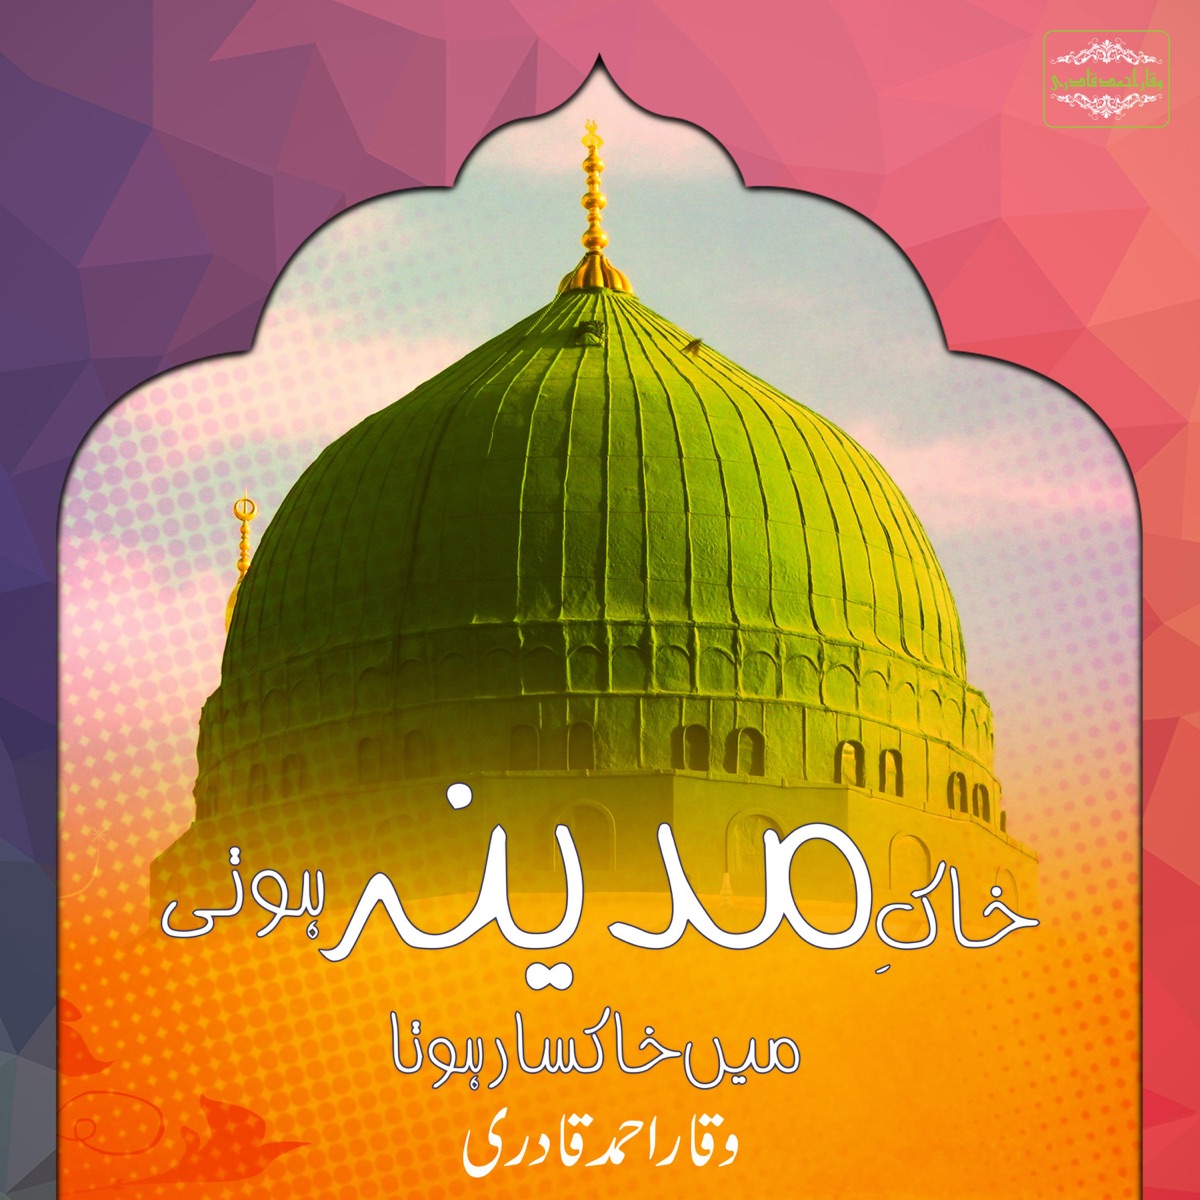 Zaat E Wala Baar Baar Durood - Single by Waqar Ahmed Qadri on Apple Music